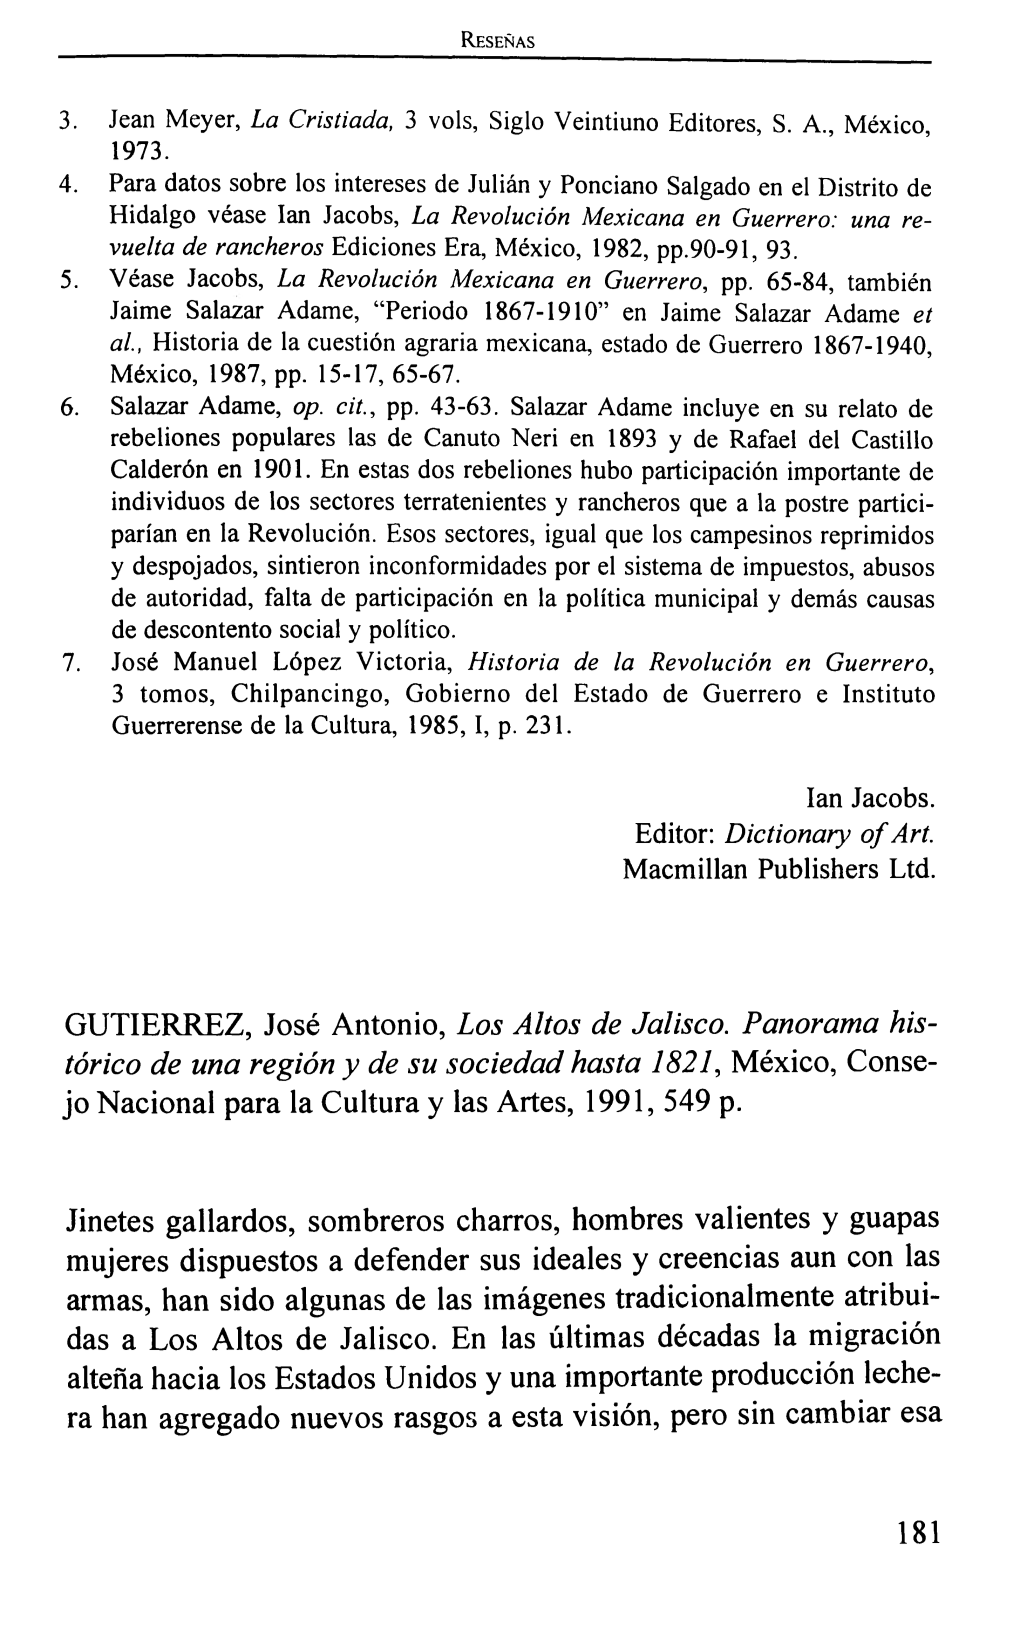 GUTIERREZ, José Antonio, Los Altos De Jalisco. Panorama His Tórico De